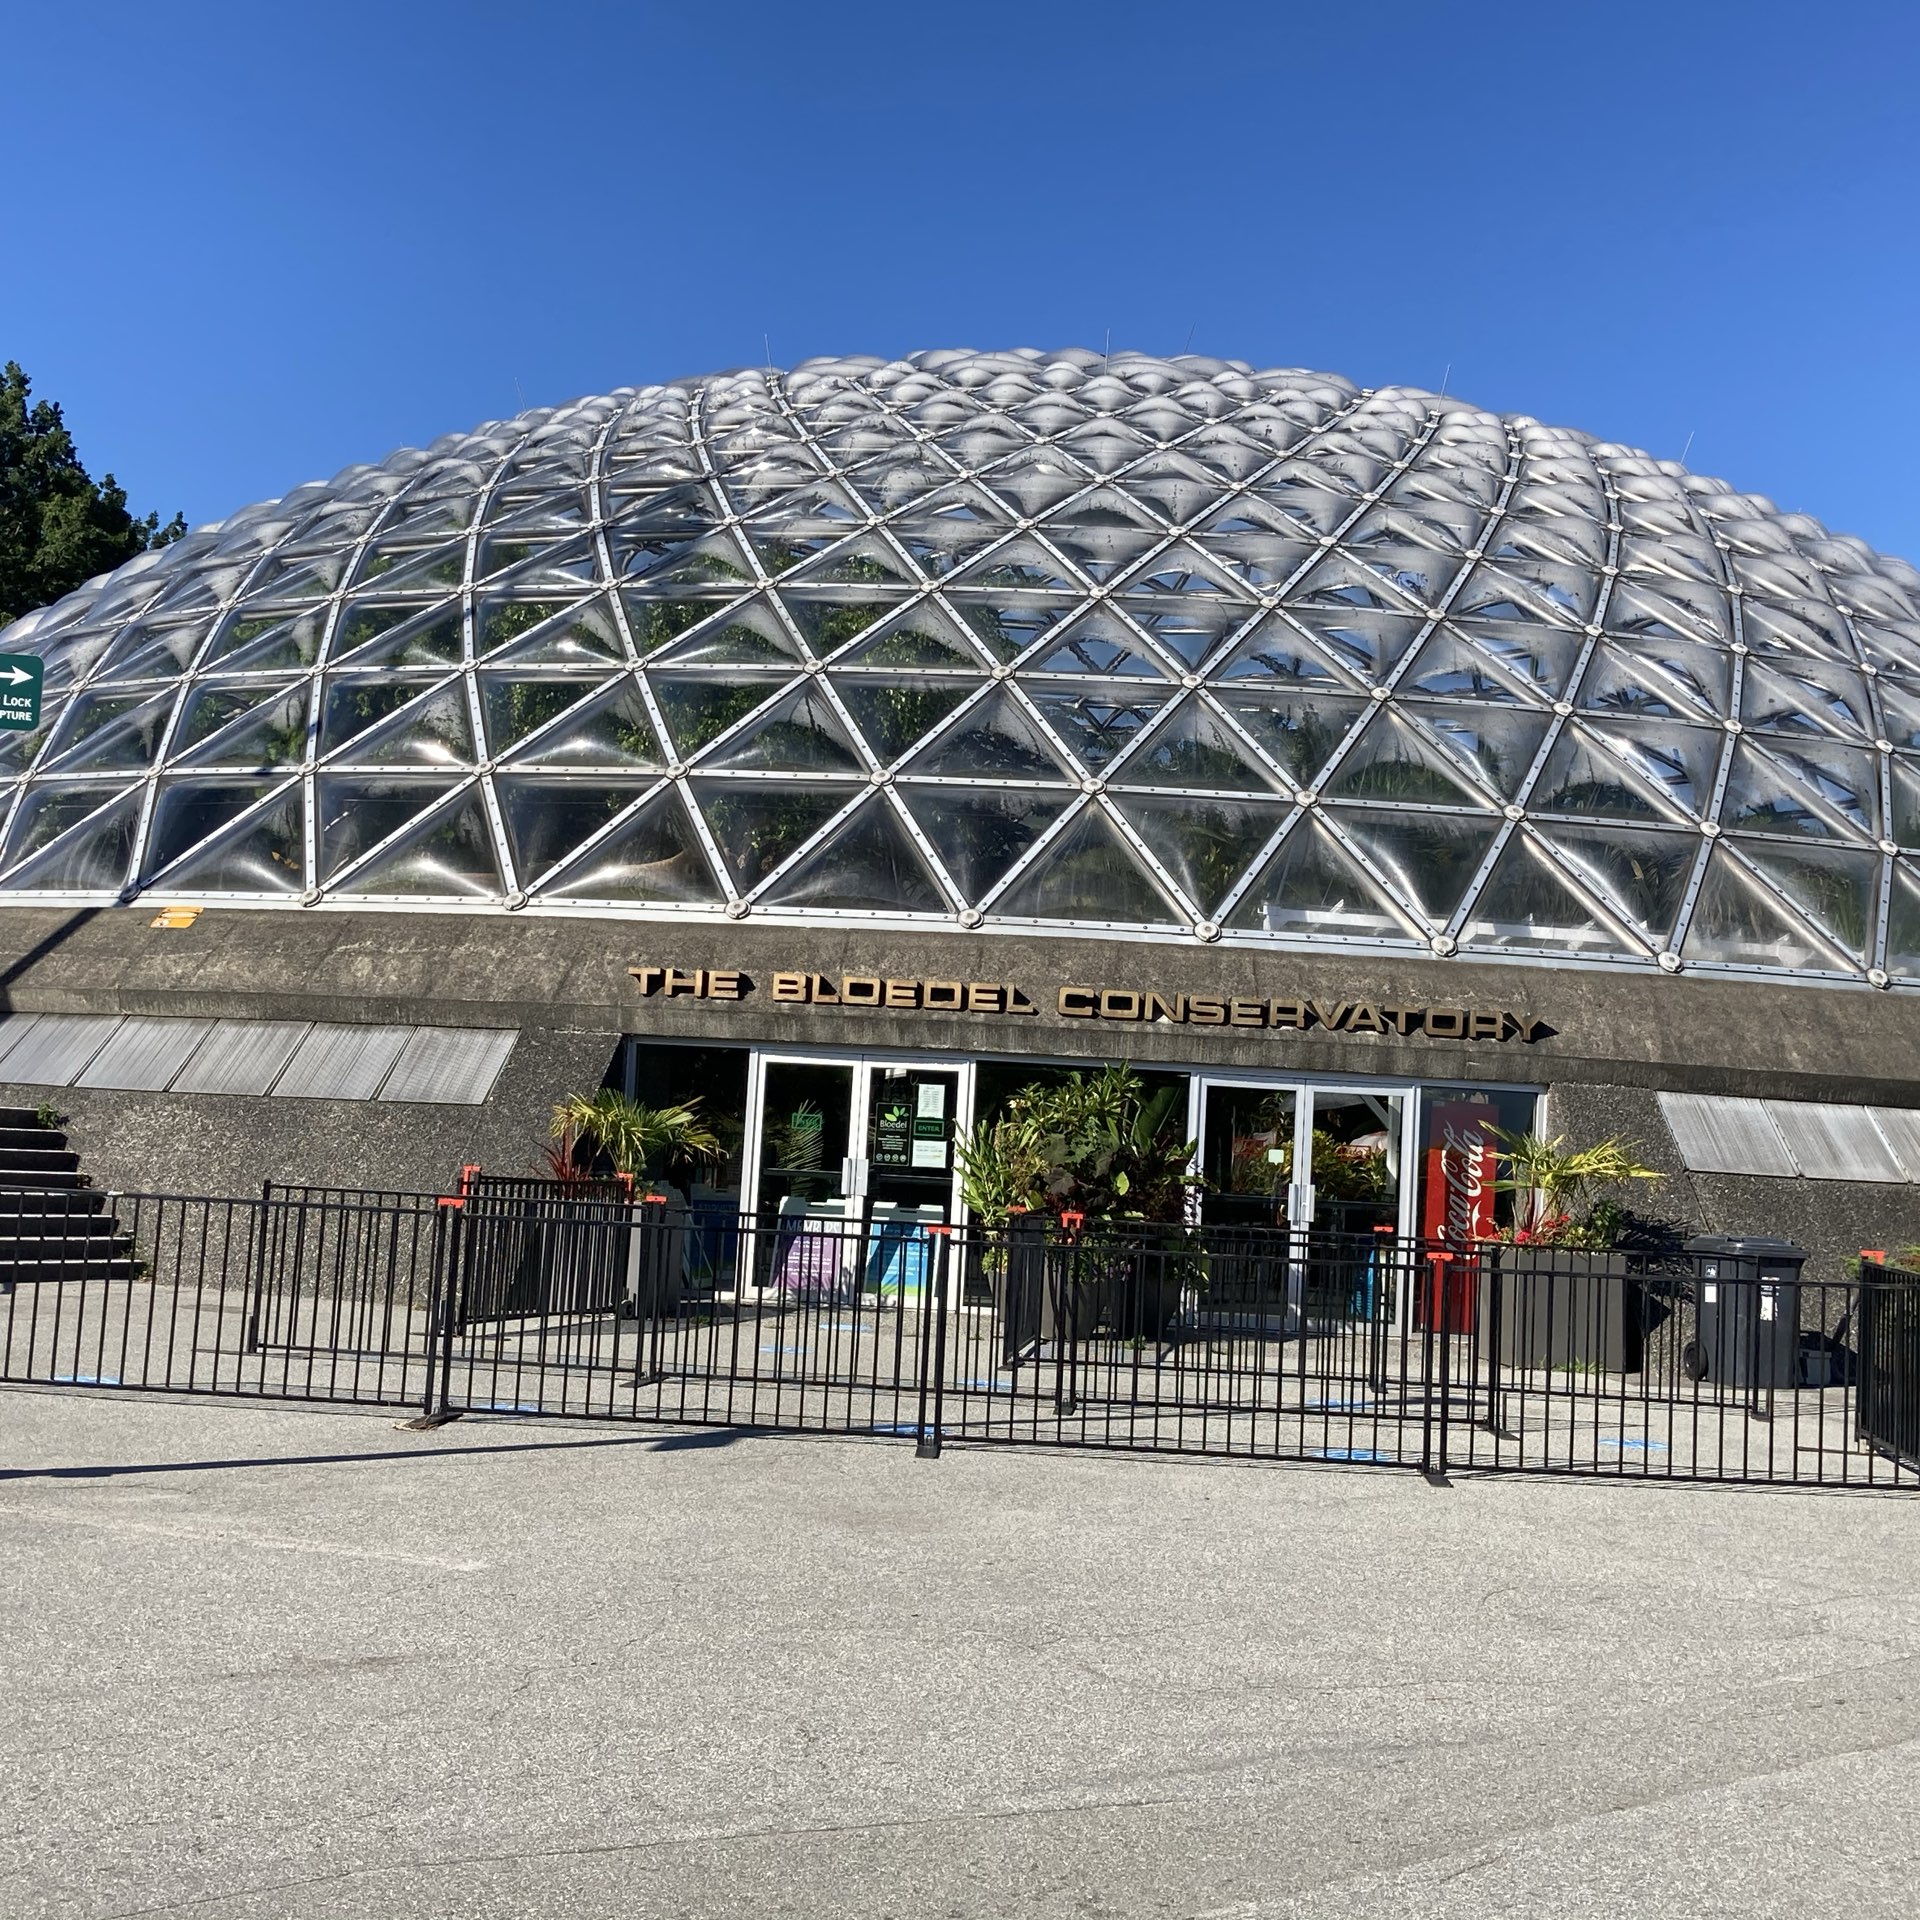 Queen Elizabeth Park, Vancouve | Trip.com Vancouver Travelogues